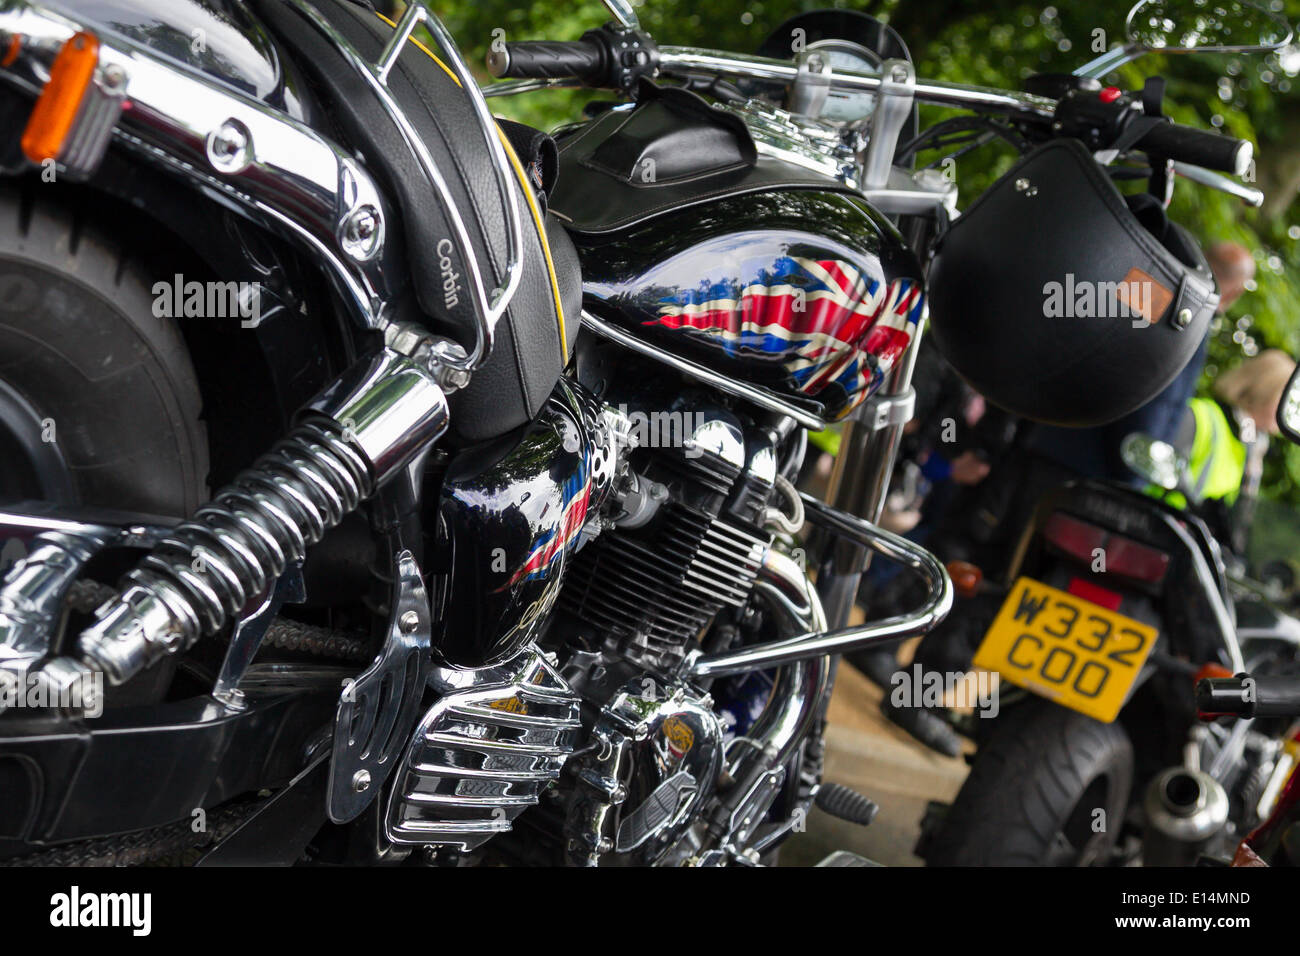 Londra, Inghilterra, 22 maggio ,2014. Un motorcylce come i motociclisti si riuniranno presso il parco di Greenwich in occasione del primo anniversario dell'assassinio di Fusilier Lee Rigby vicino alla sua Woolwich caserma. Credito: David clacson/Alamy Live News Foto Stock